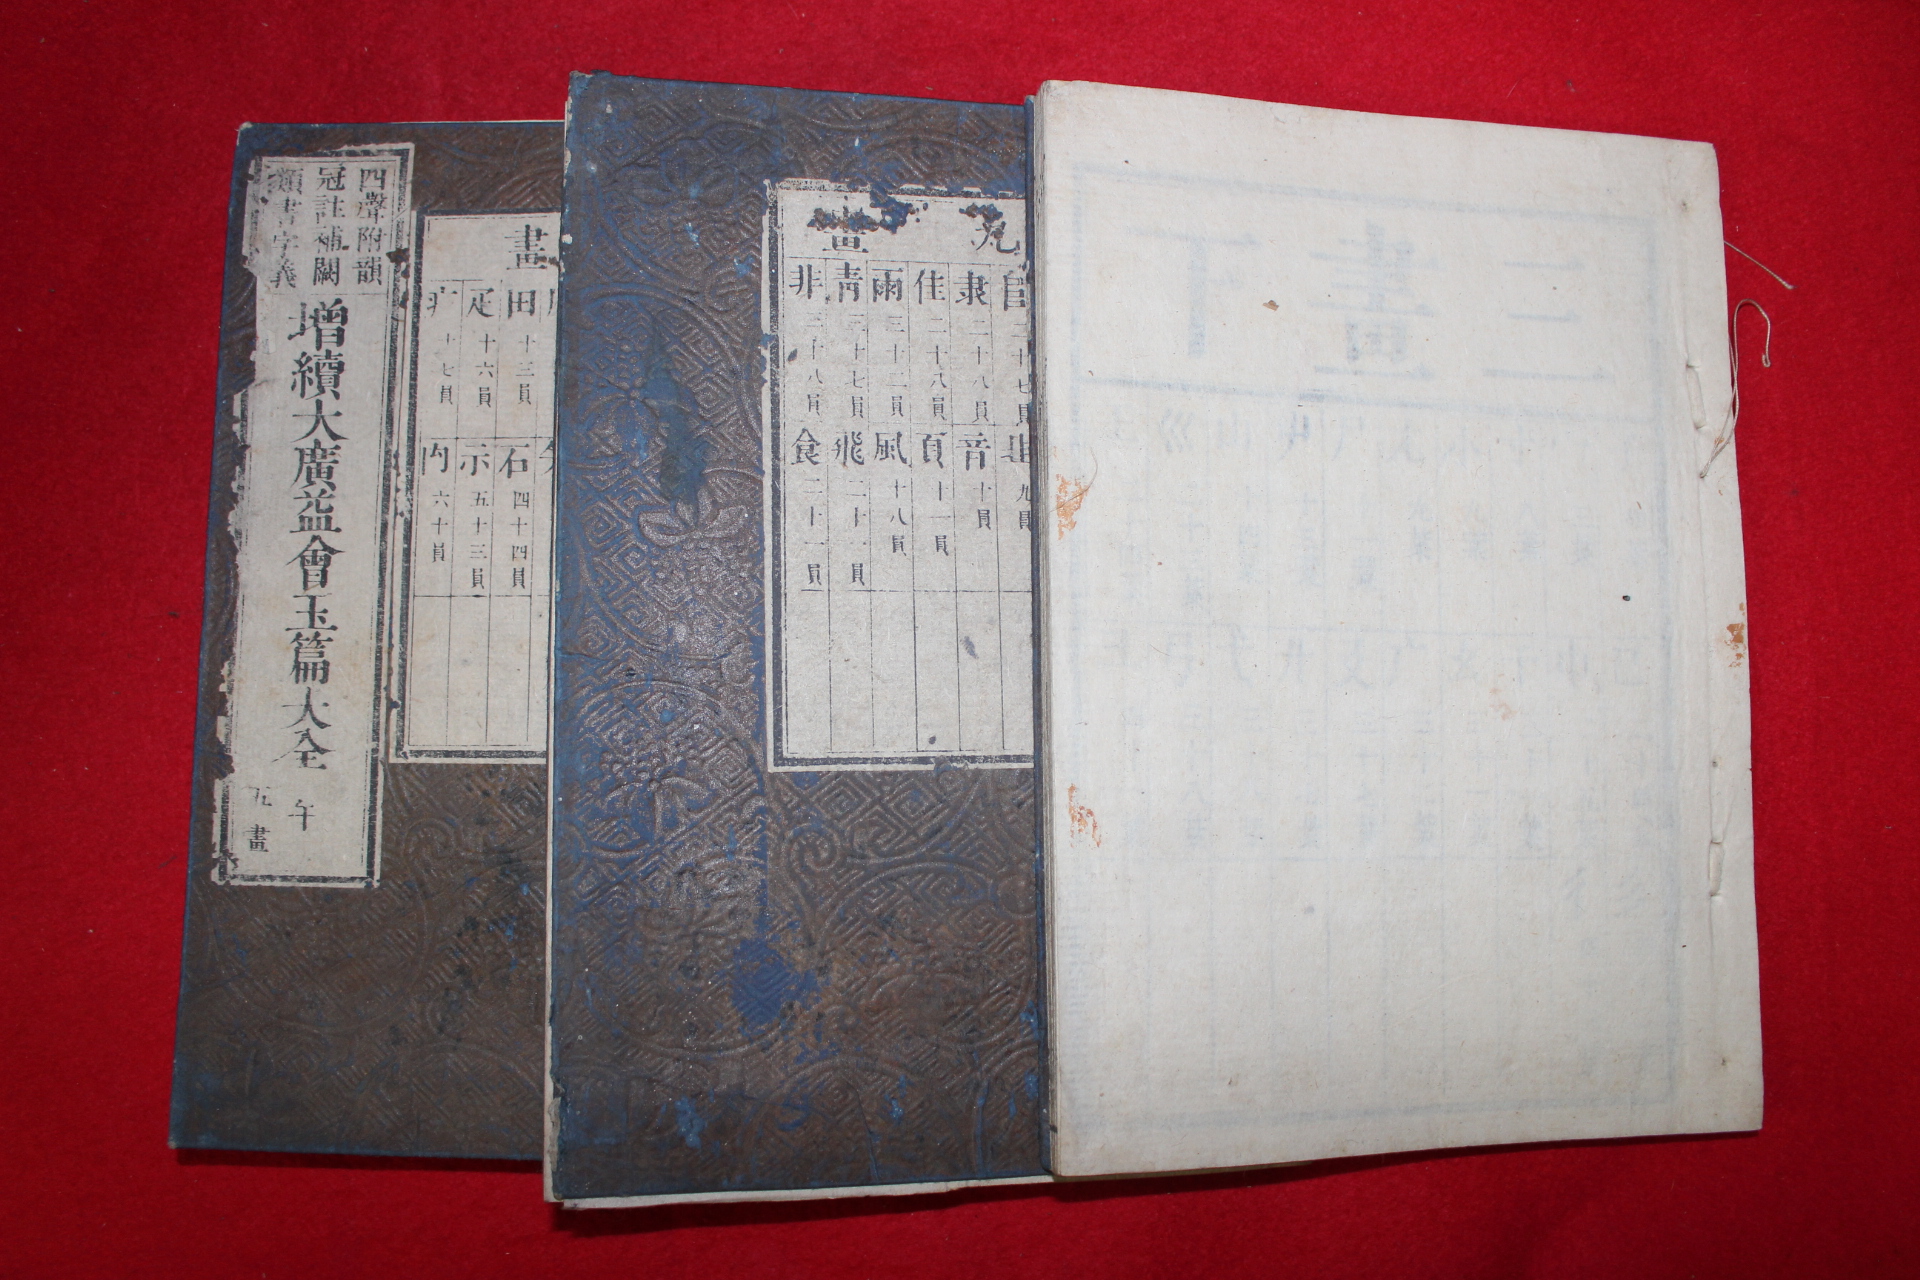 에도시기 일본목판본 증속대광익회옥편(增續大廣益會玉篇) 3책